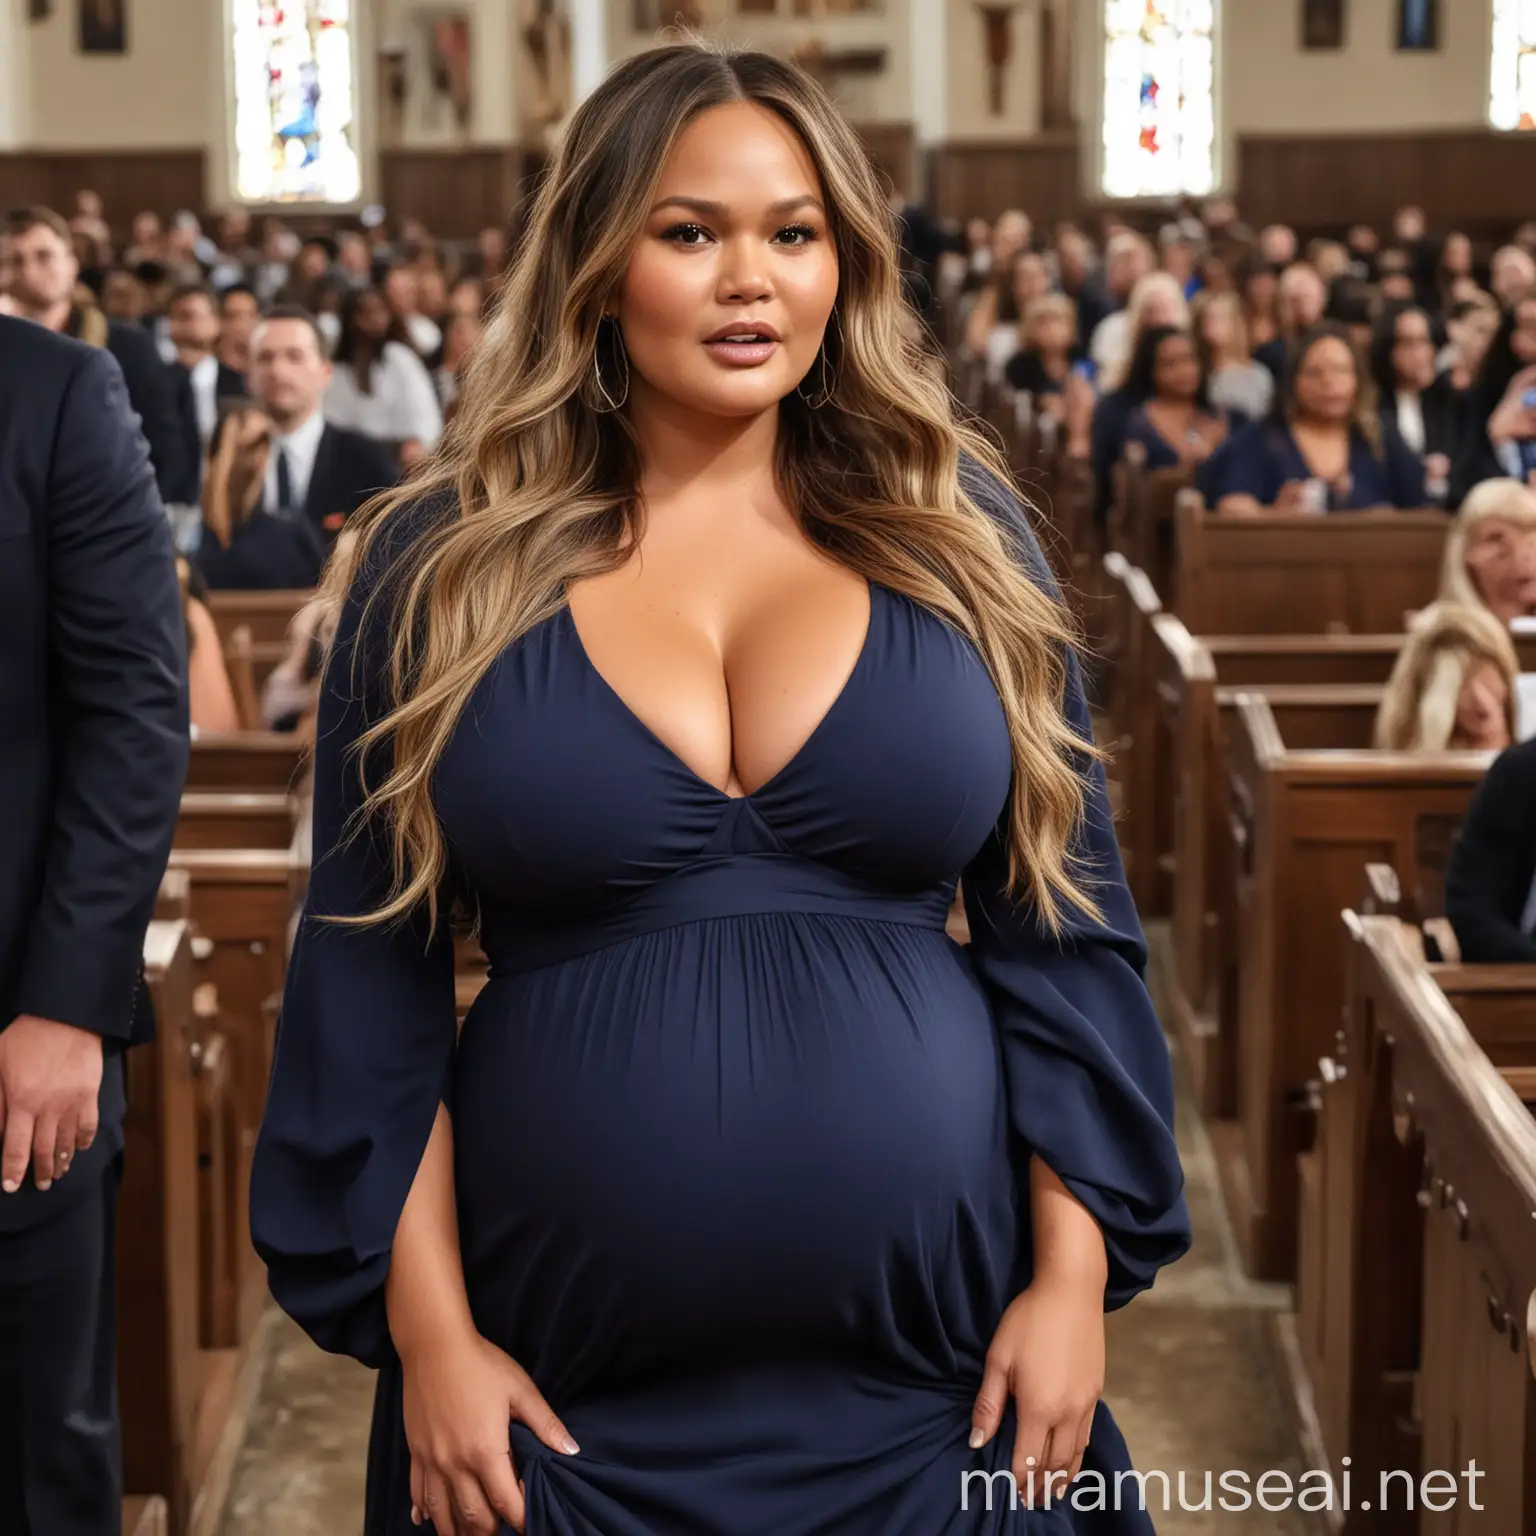 Chrissy Teigen Pregnant in Navy Blue Dress Busty Church Fashion